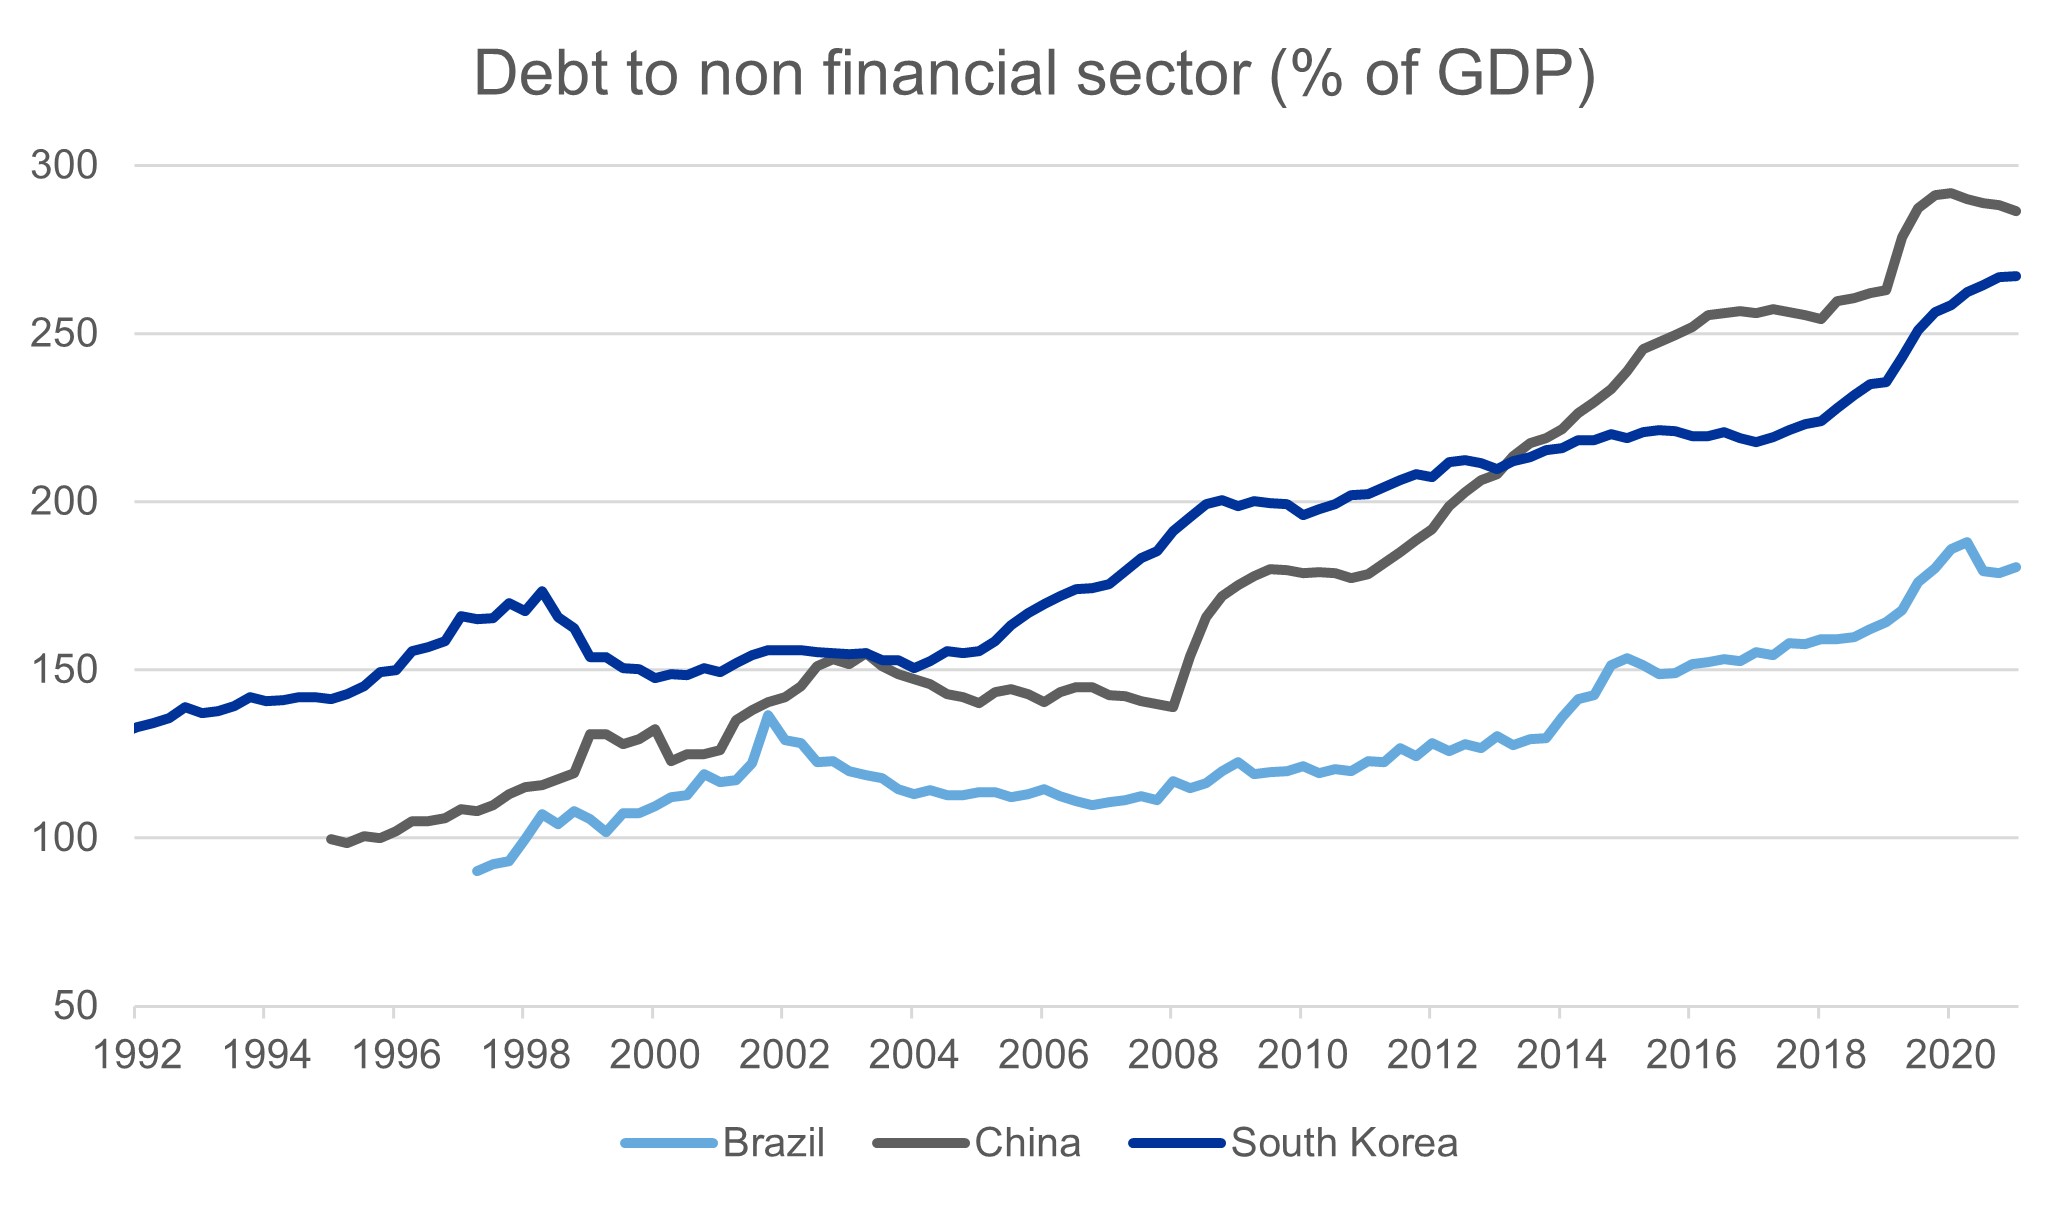 Debt to non financial sector